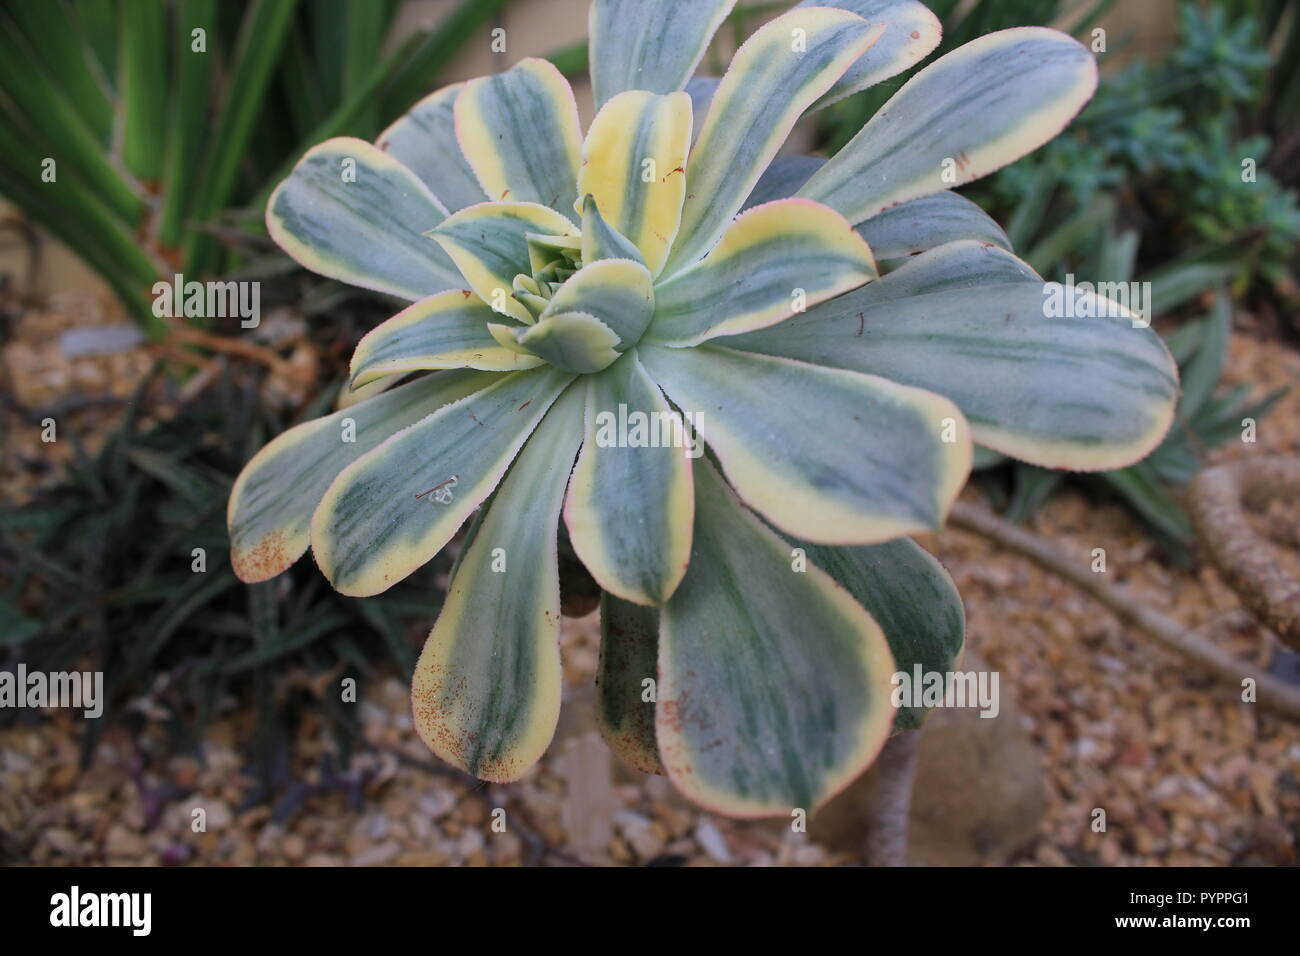 Aeonium sunburst, sun aeonium, selenium arboreum, copper pinwheel, plant growing in the garden Stock Photo - Alamy